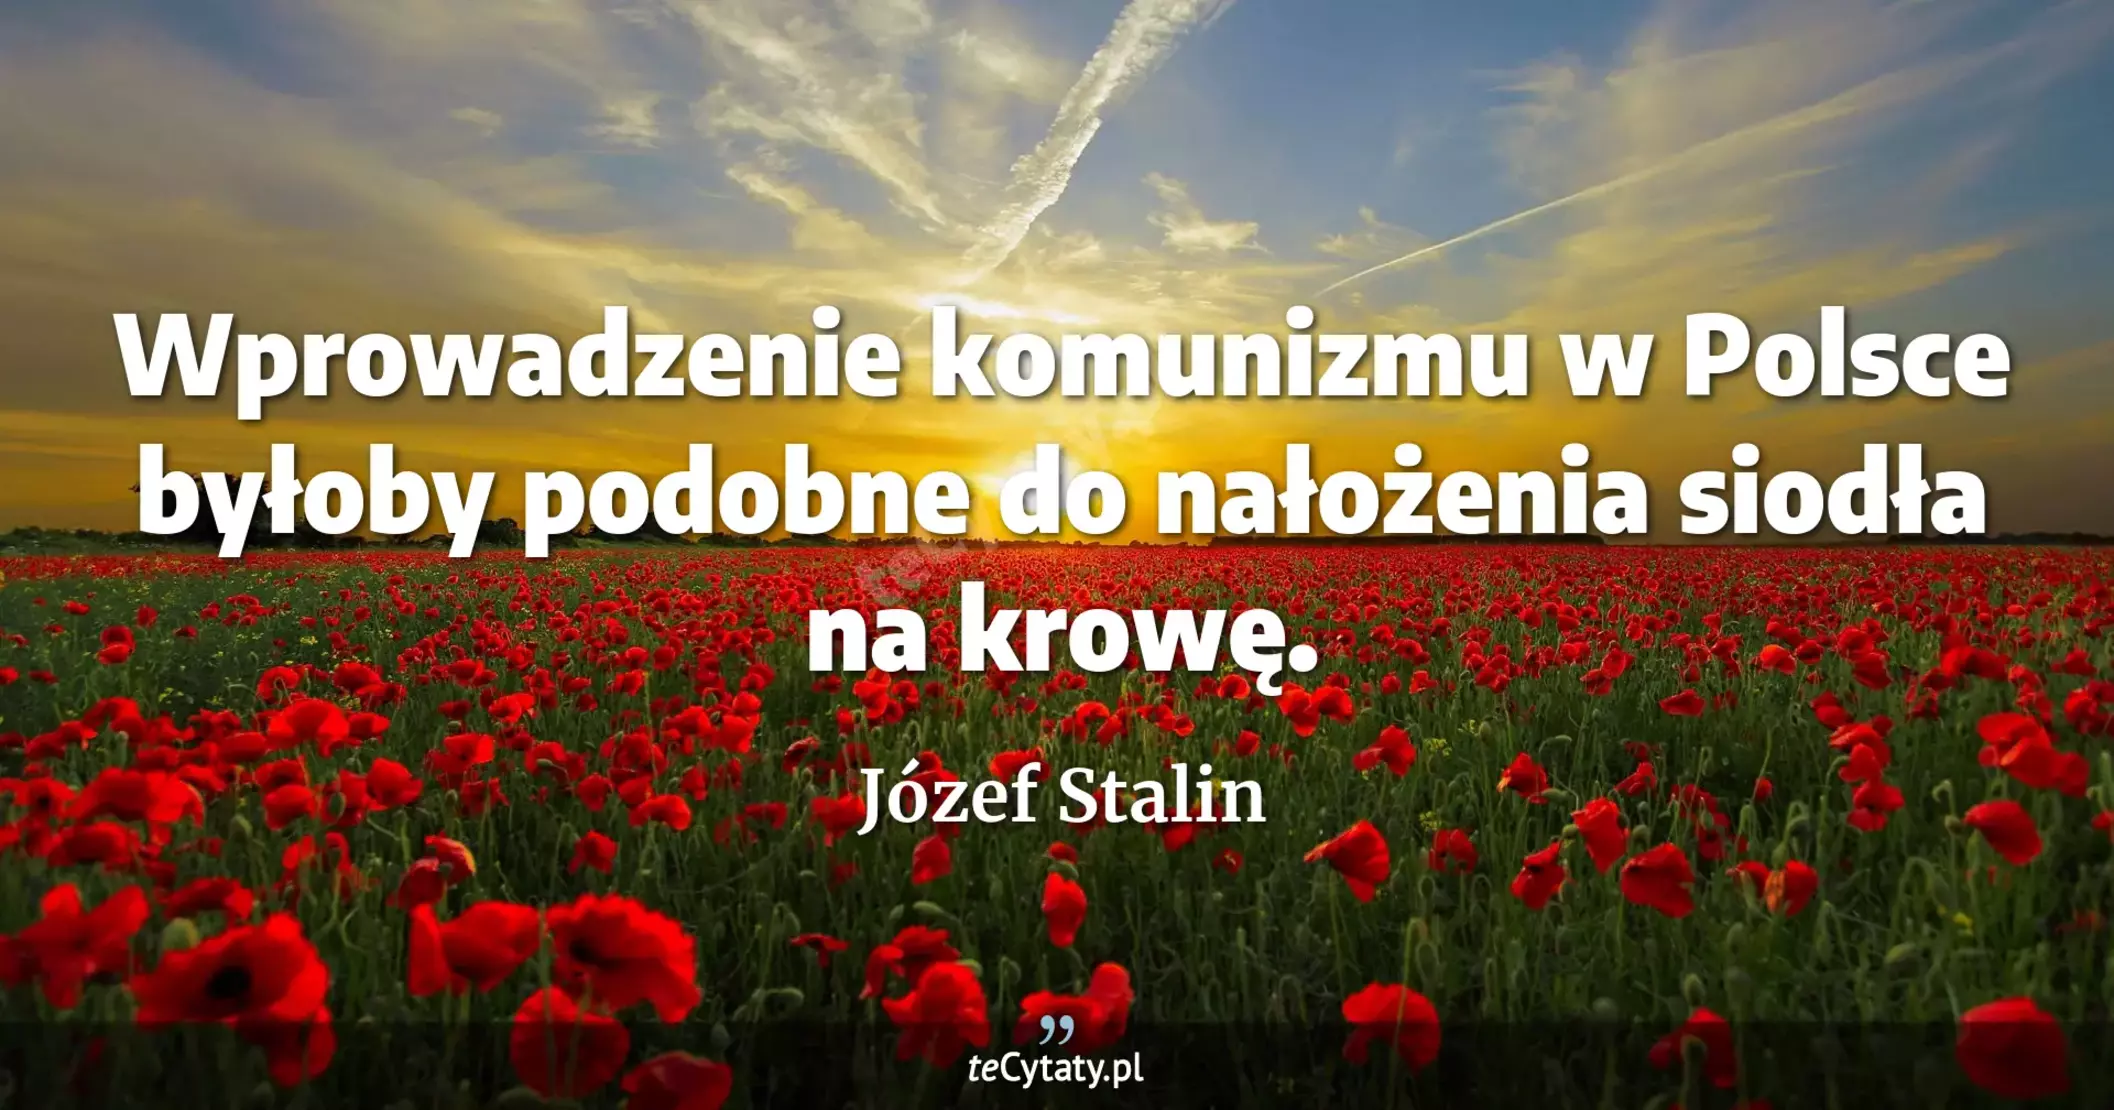 Wprowadzenie komunizmu w Polsce byłoby podobne do nałożenia siodła na krowę. - Józef Stalin